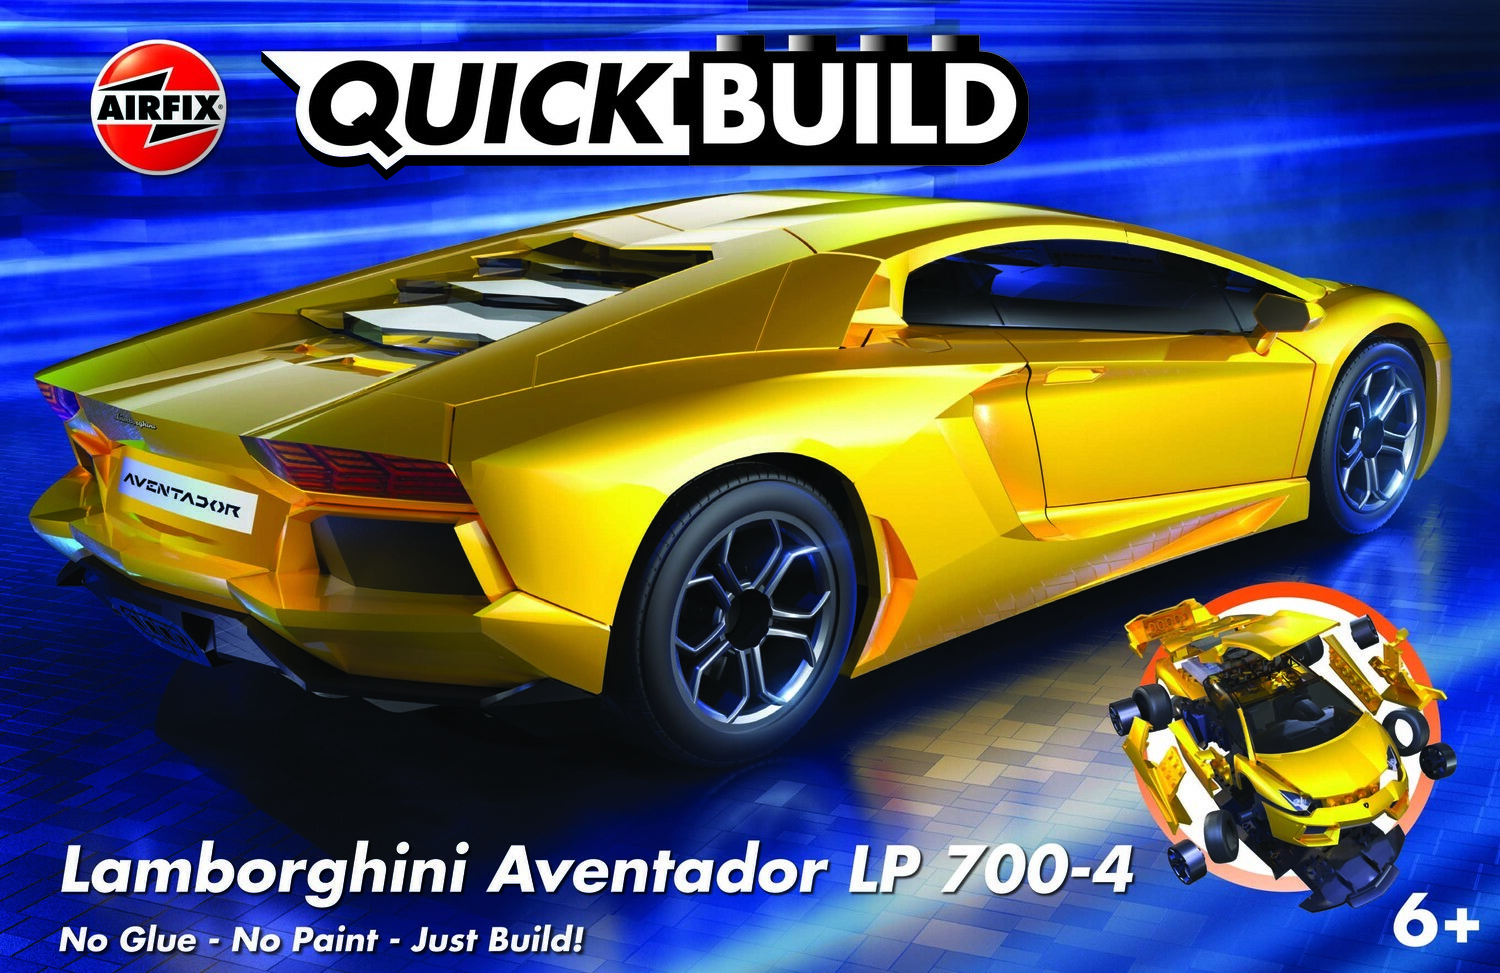 Airfix Quickbuild Lamborghini Aventador LP 700-4